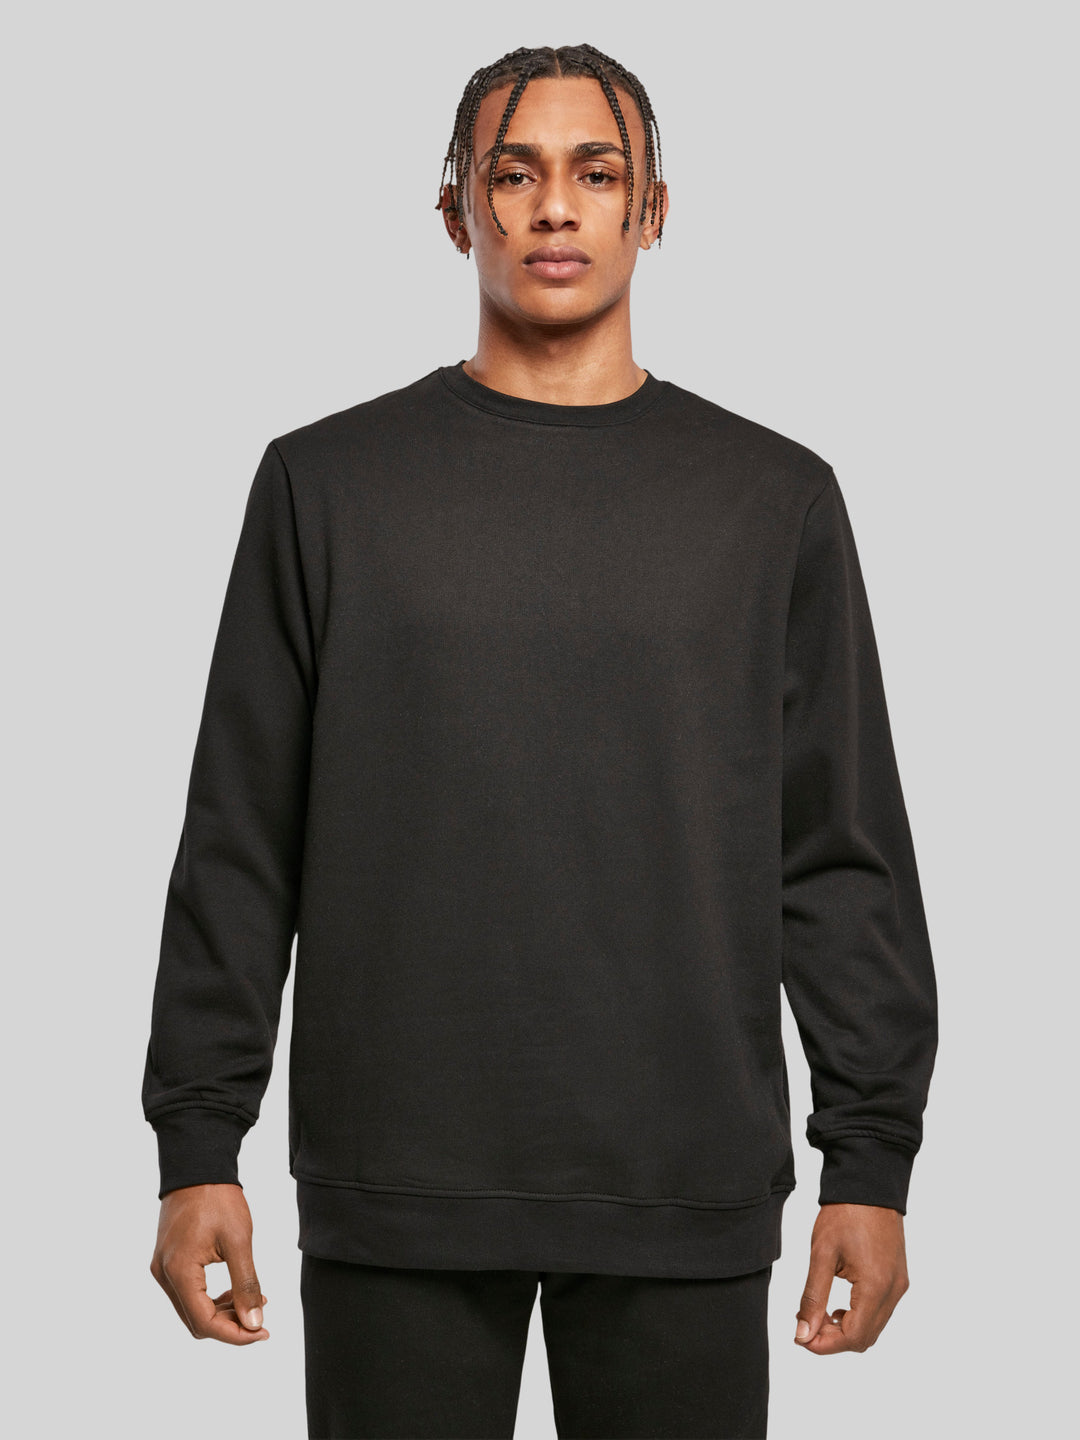 PIET | Sweatshirt Pullover Herren Ahoi Anker